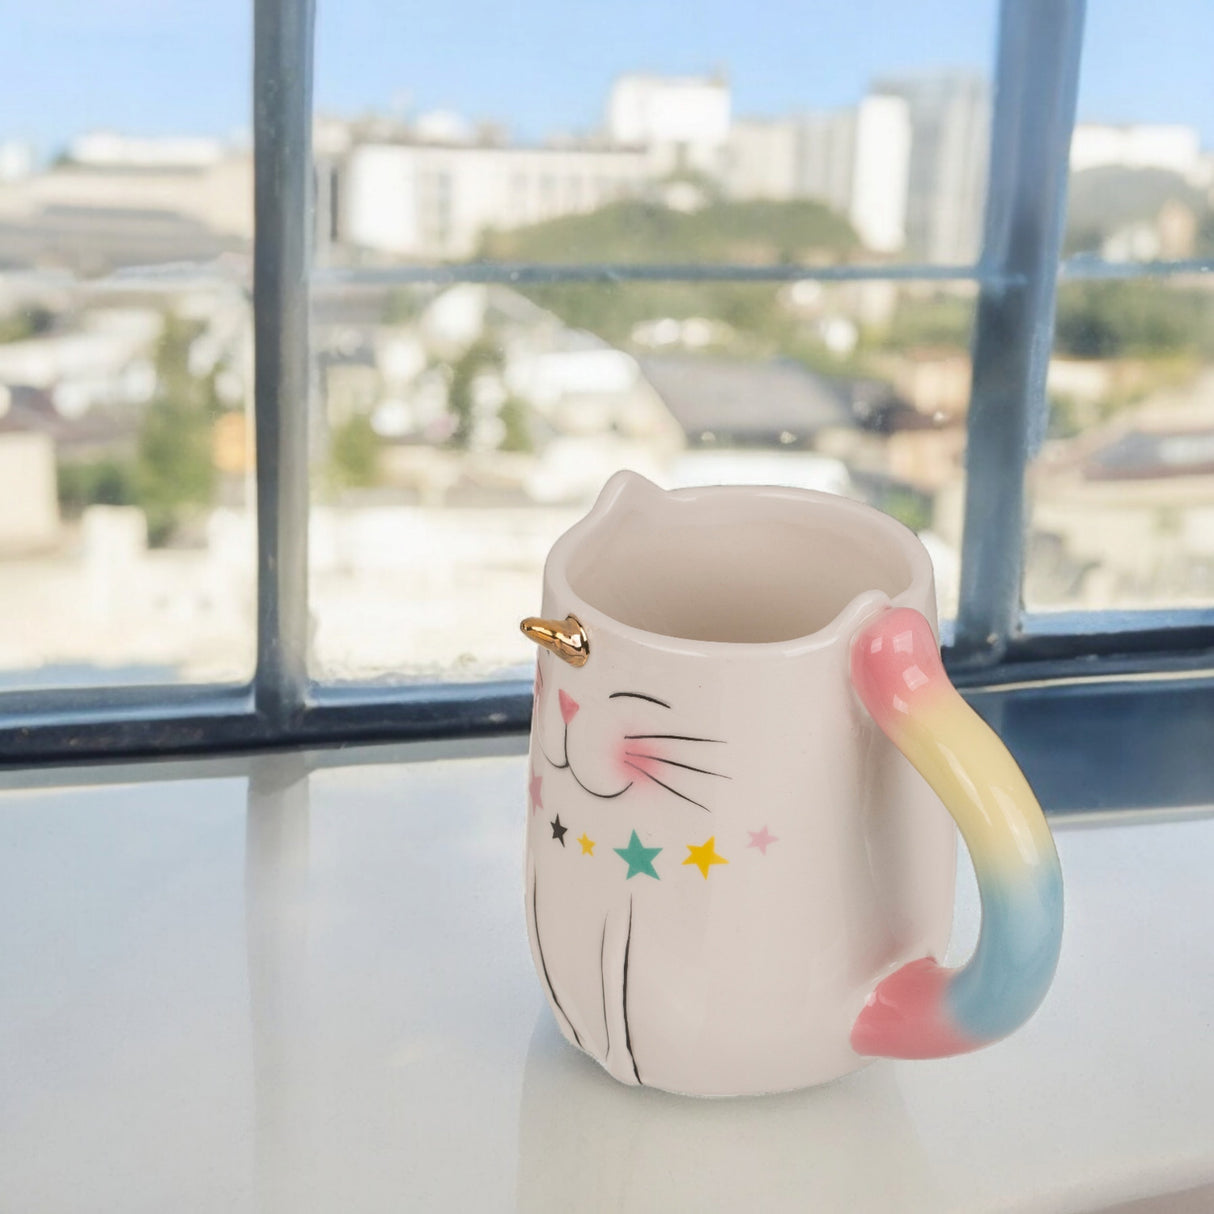 Einhorn-Katze Kaffeebecher Einhorn Geschenke für Mädchen Unicorn Tasse aus Keramik